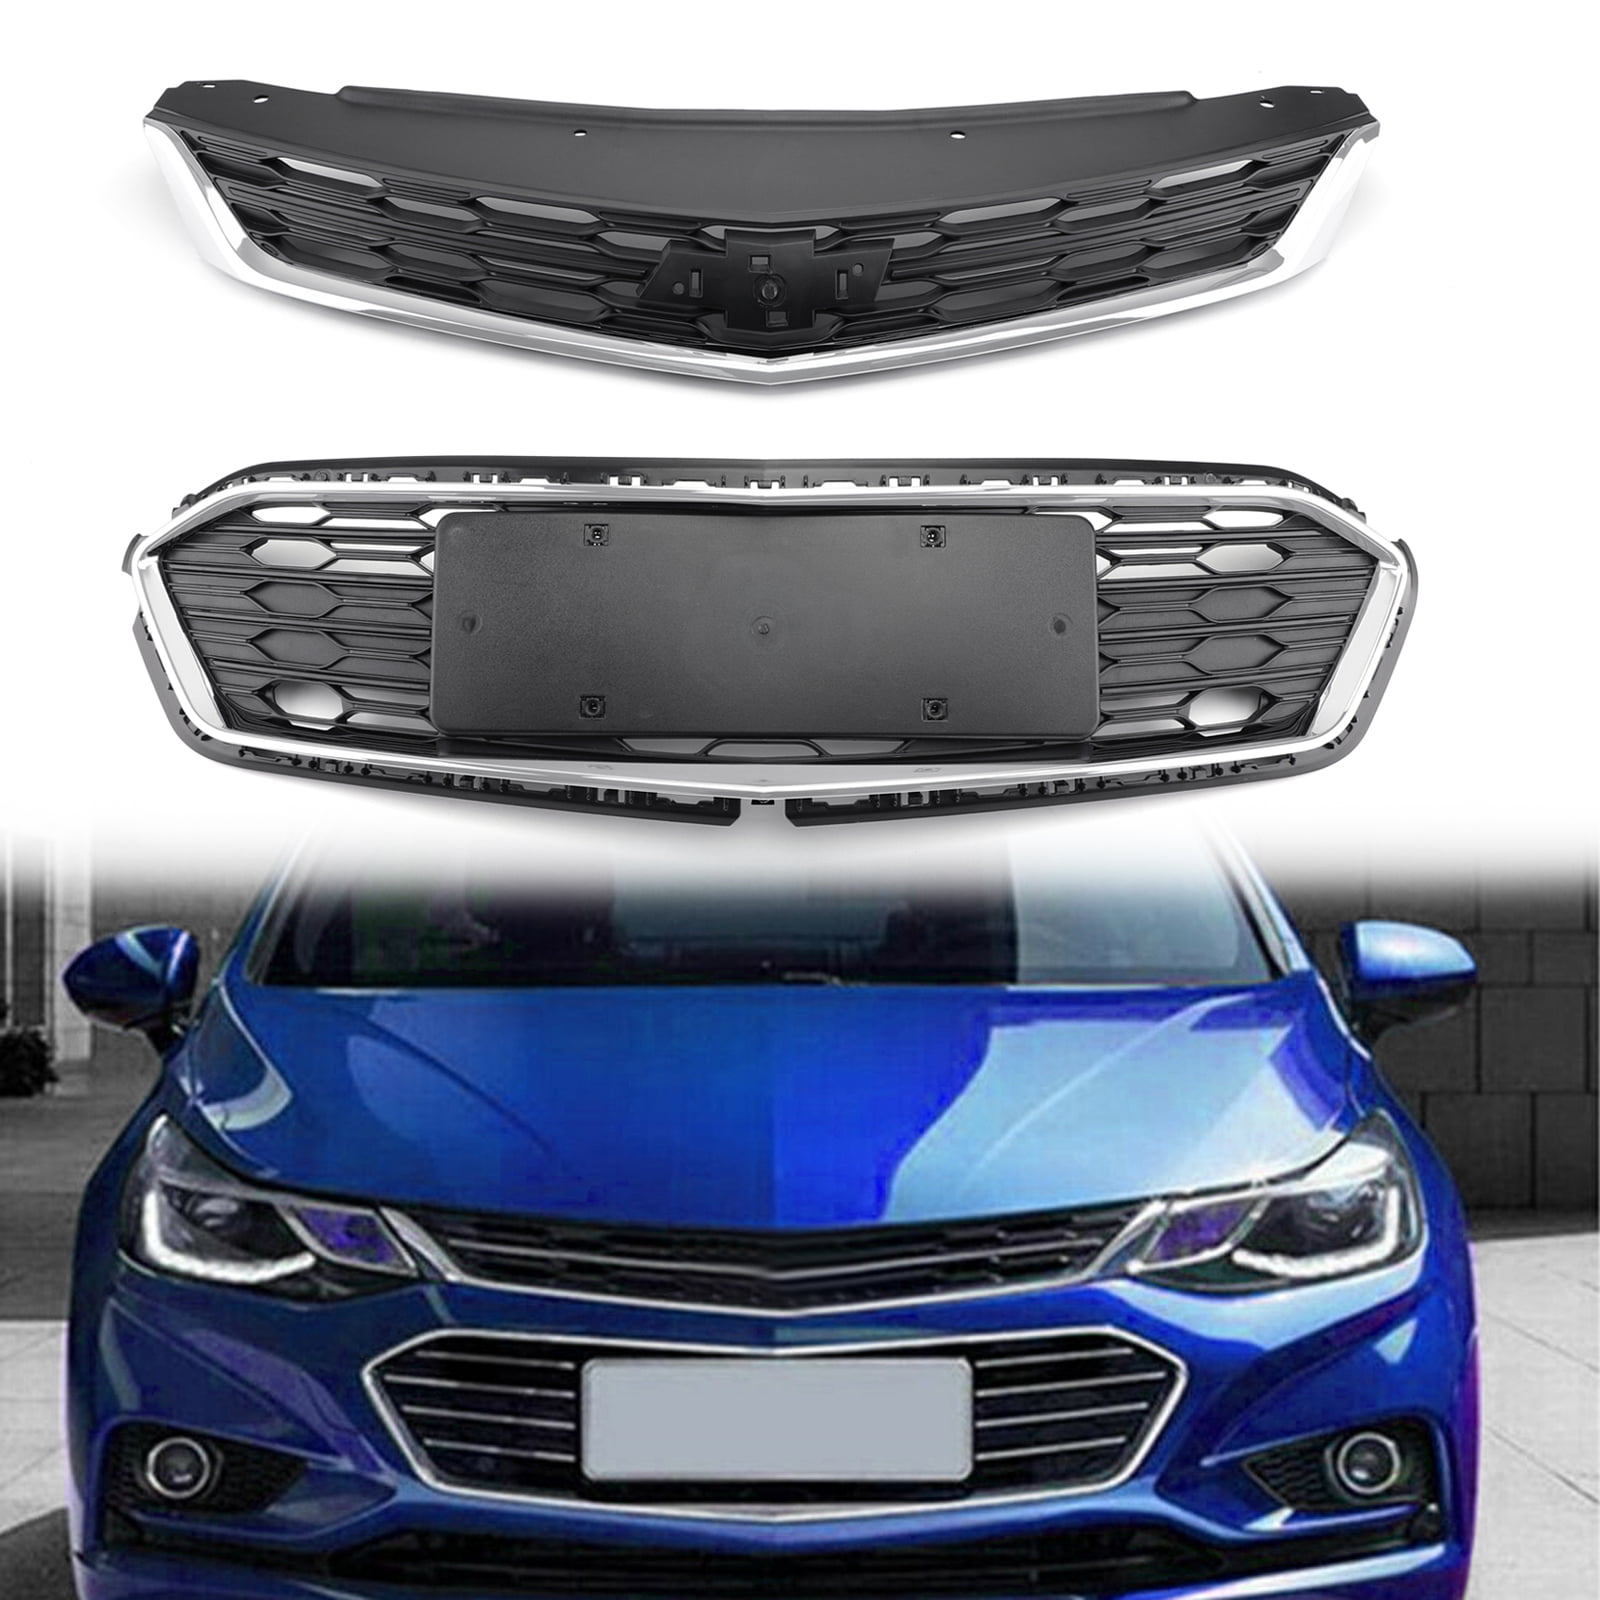 New Front Bumper Upper Grill Grille For Chevrolet Cruze 2016 2017 2018 Car Accessories Parts Upper - Walmart.com